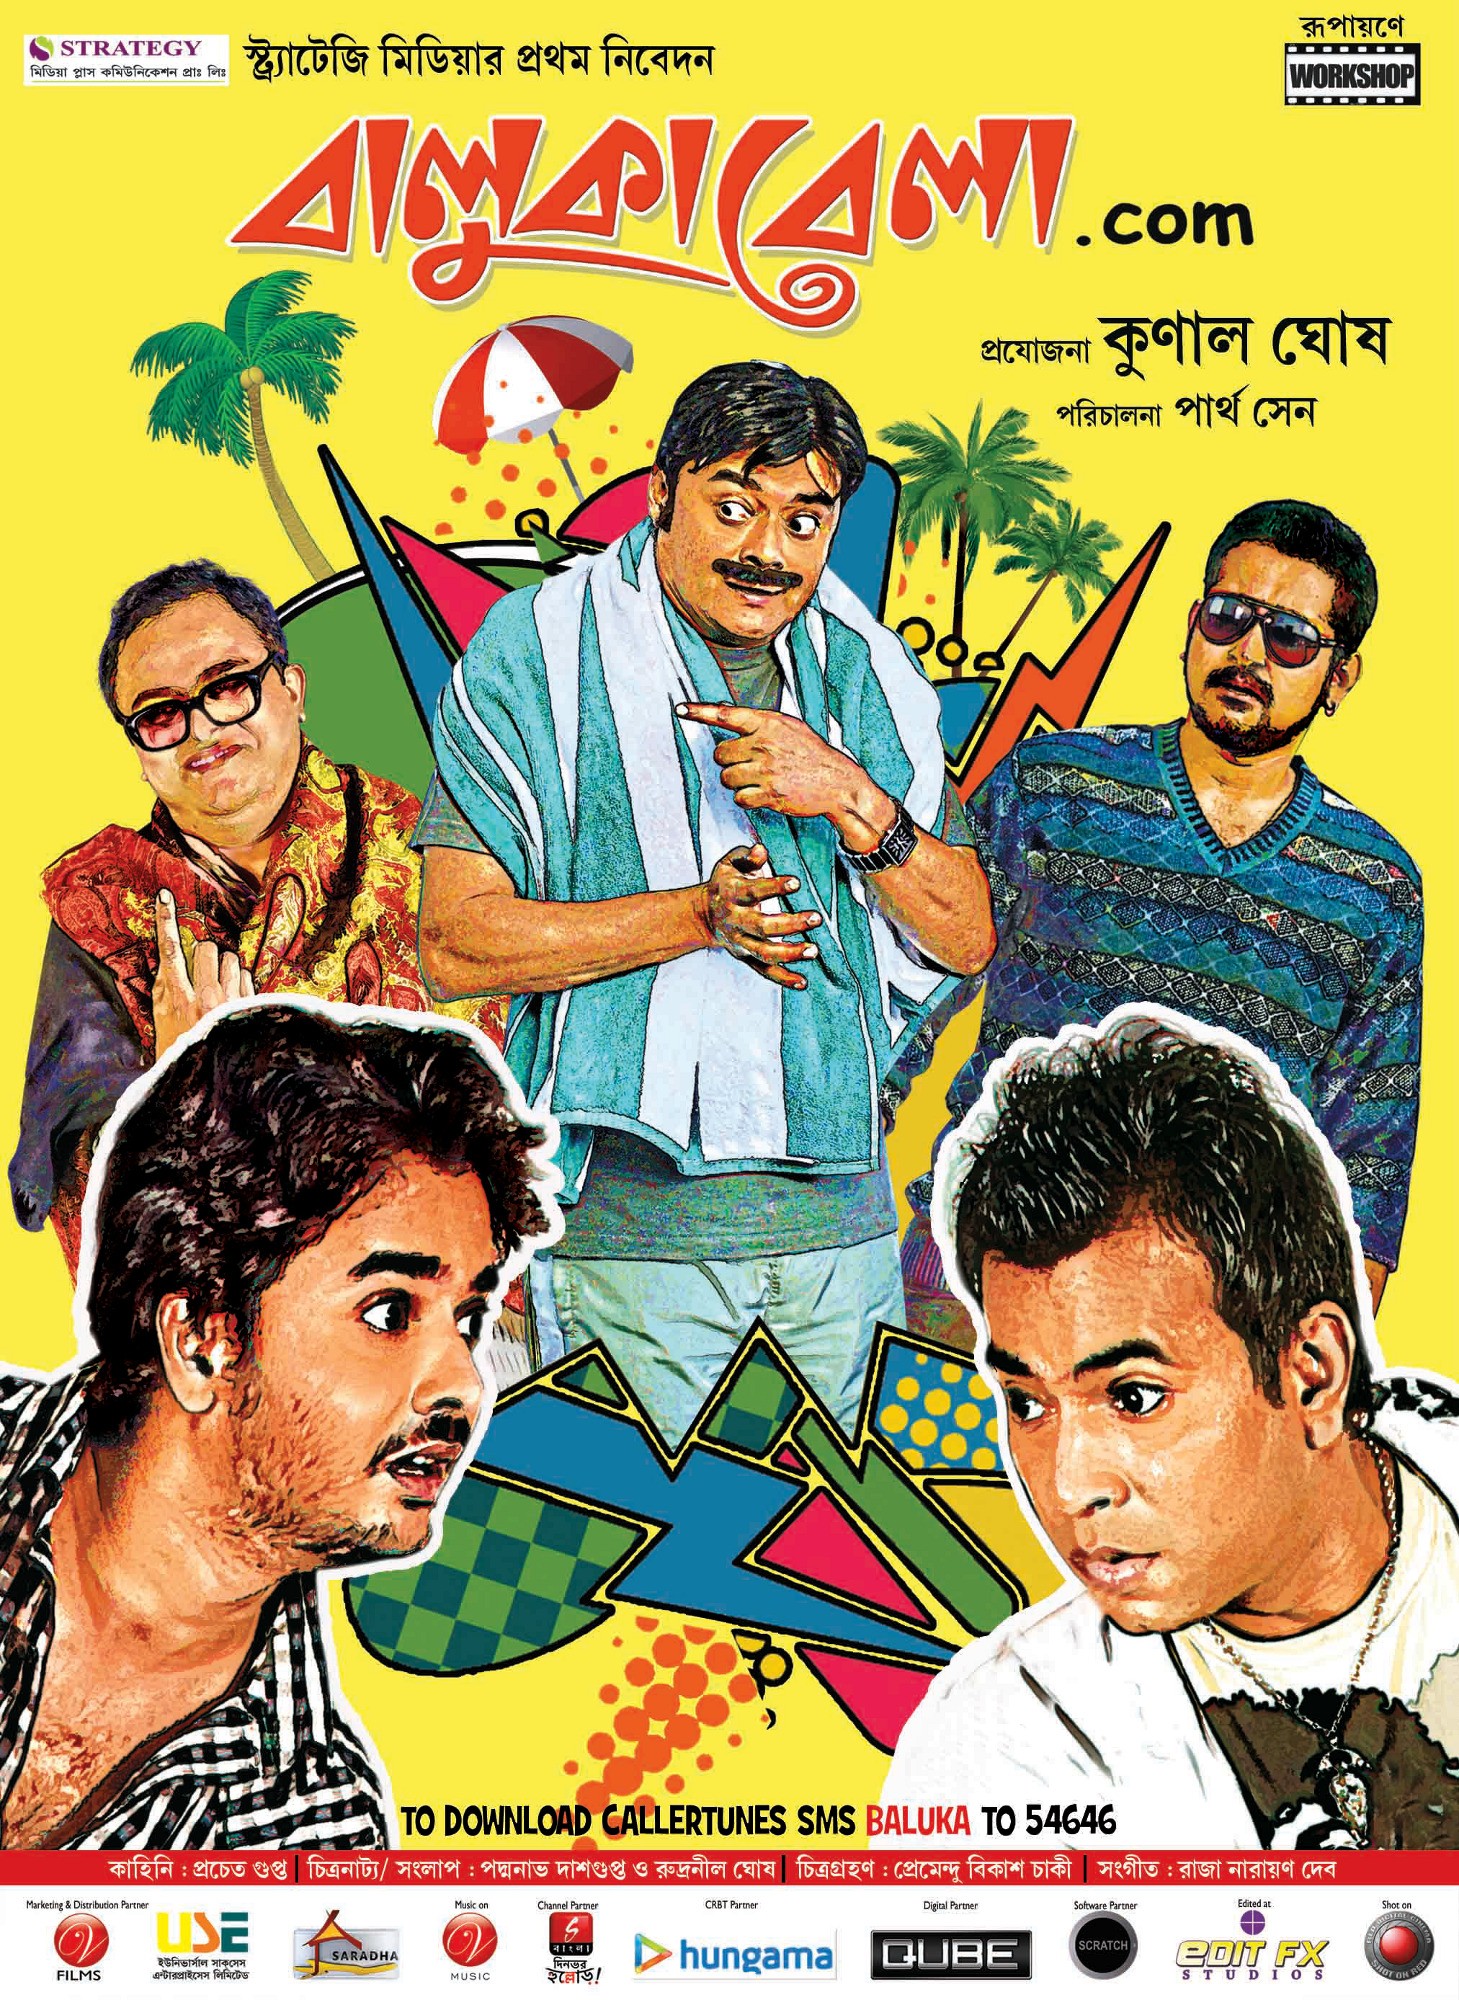 Mega Sized Movie Poster Image for Balukabela.com (#2 of 3)